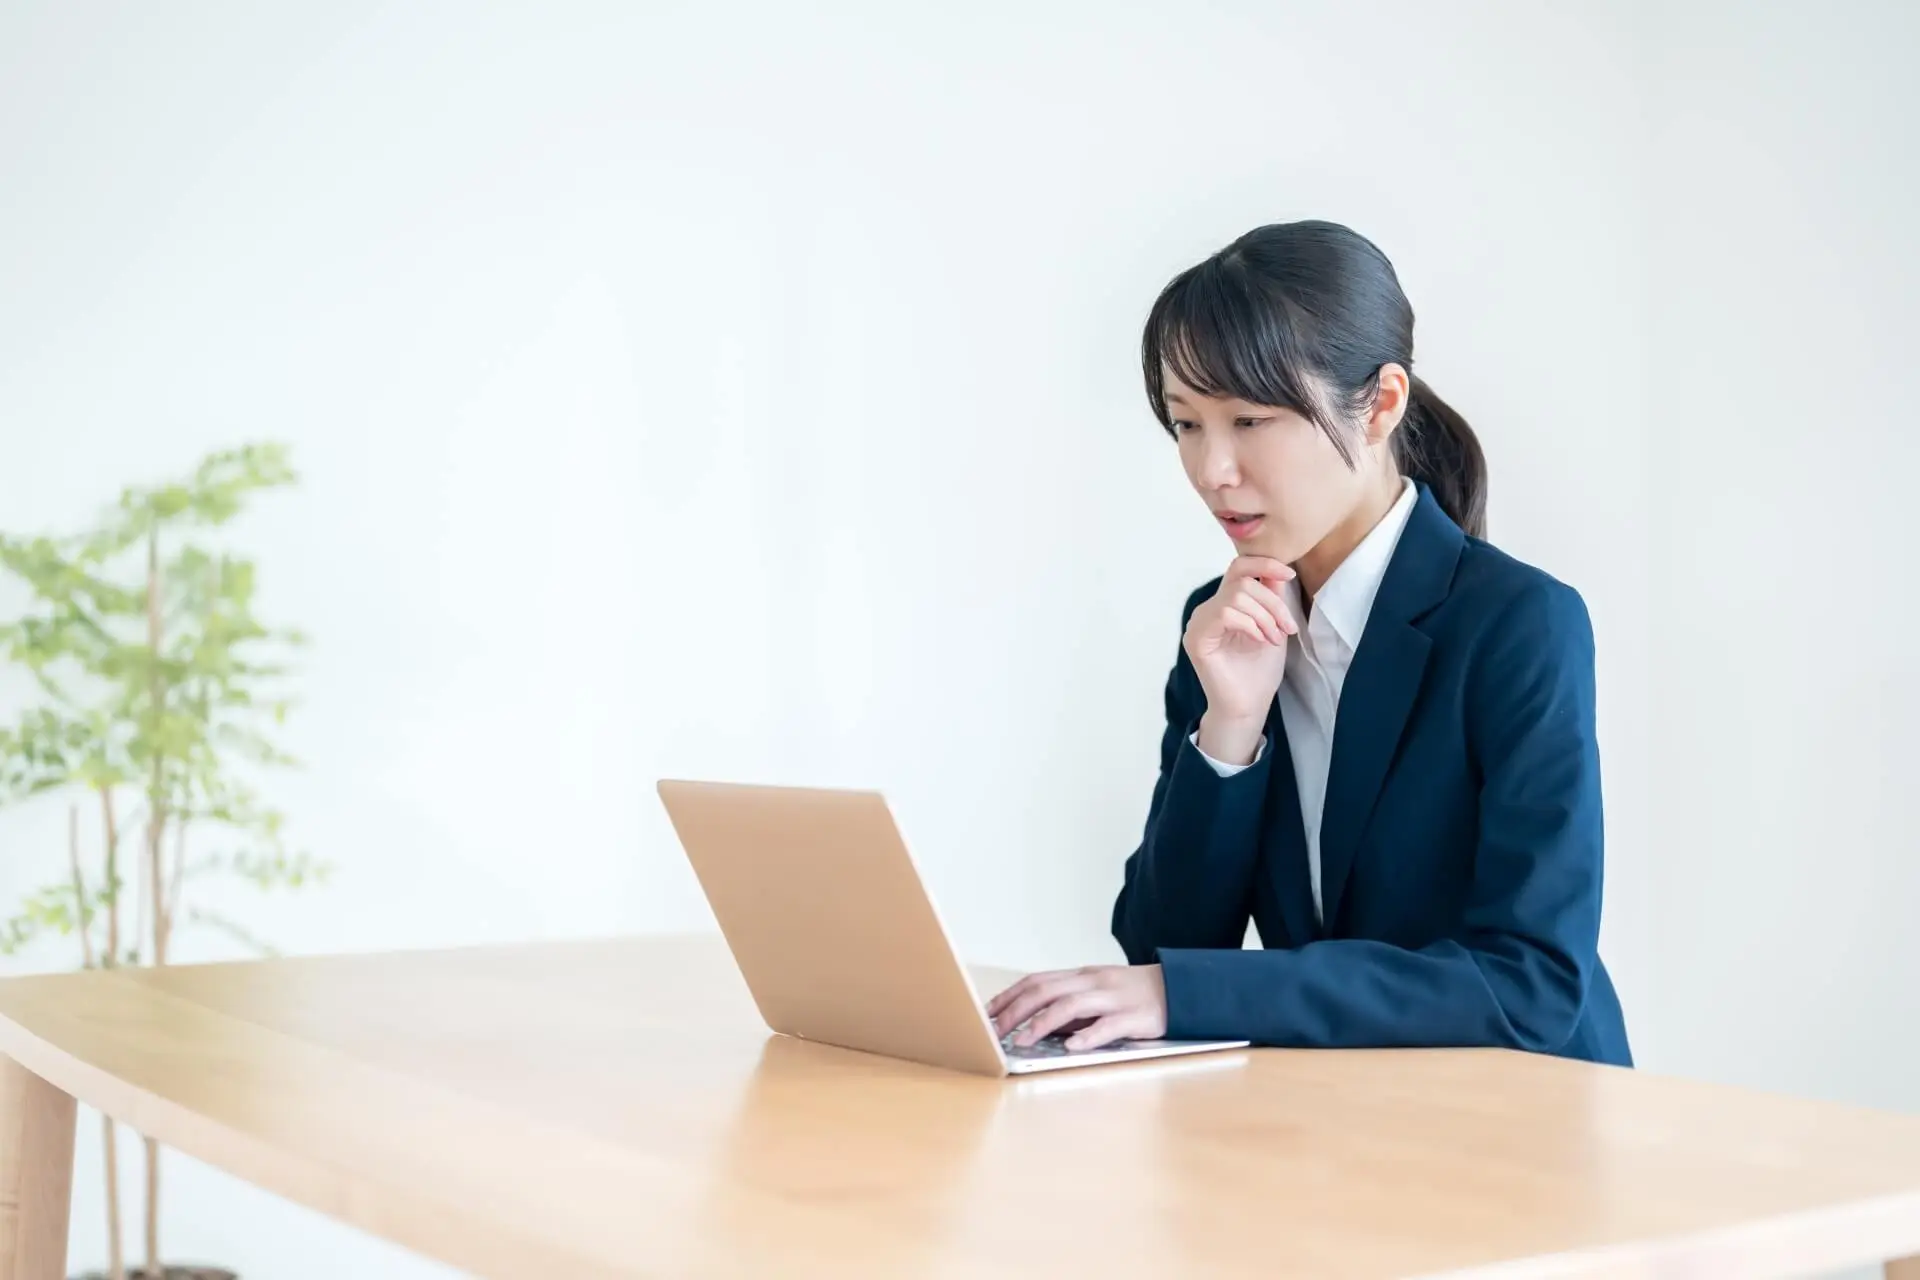 スーツ姿の女性が机でパソコンを操作している写真